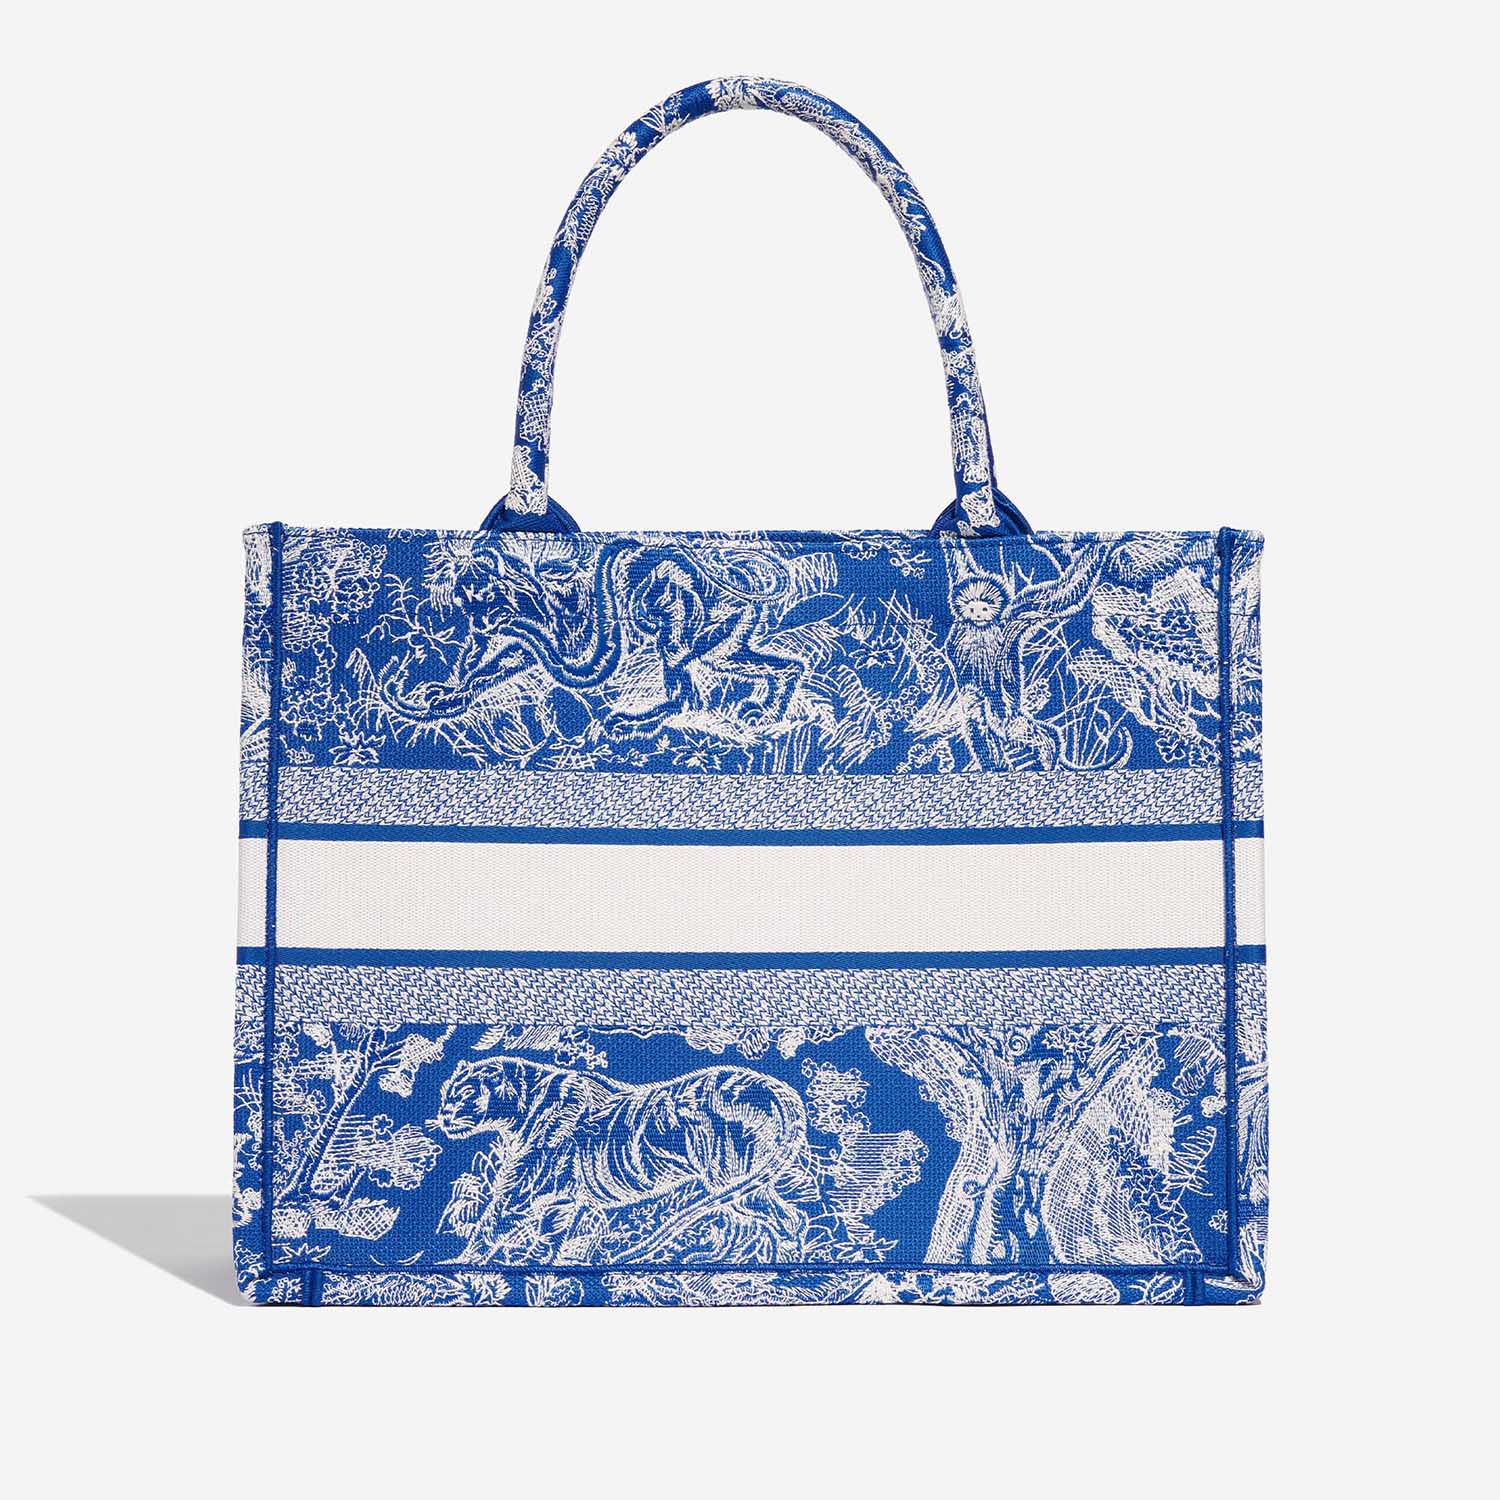 Dior BookTote Large Blue-White Back | Verkaufen Sie Ihre Designer-Tasche auf Saclab.com